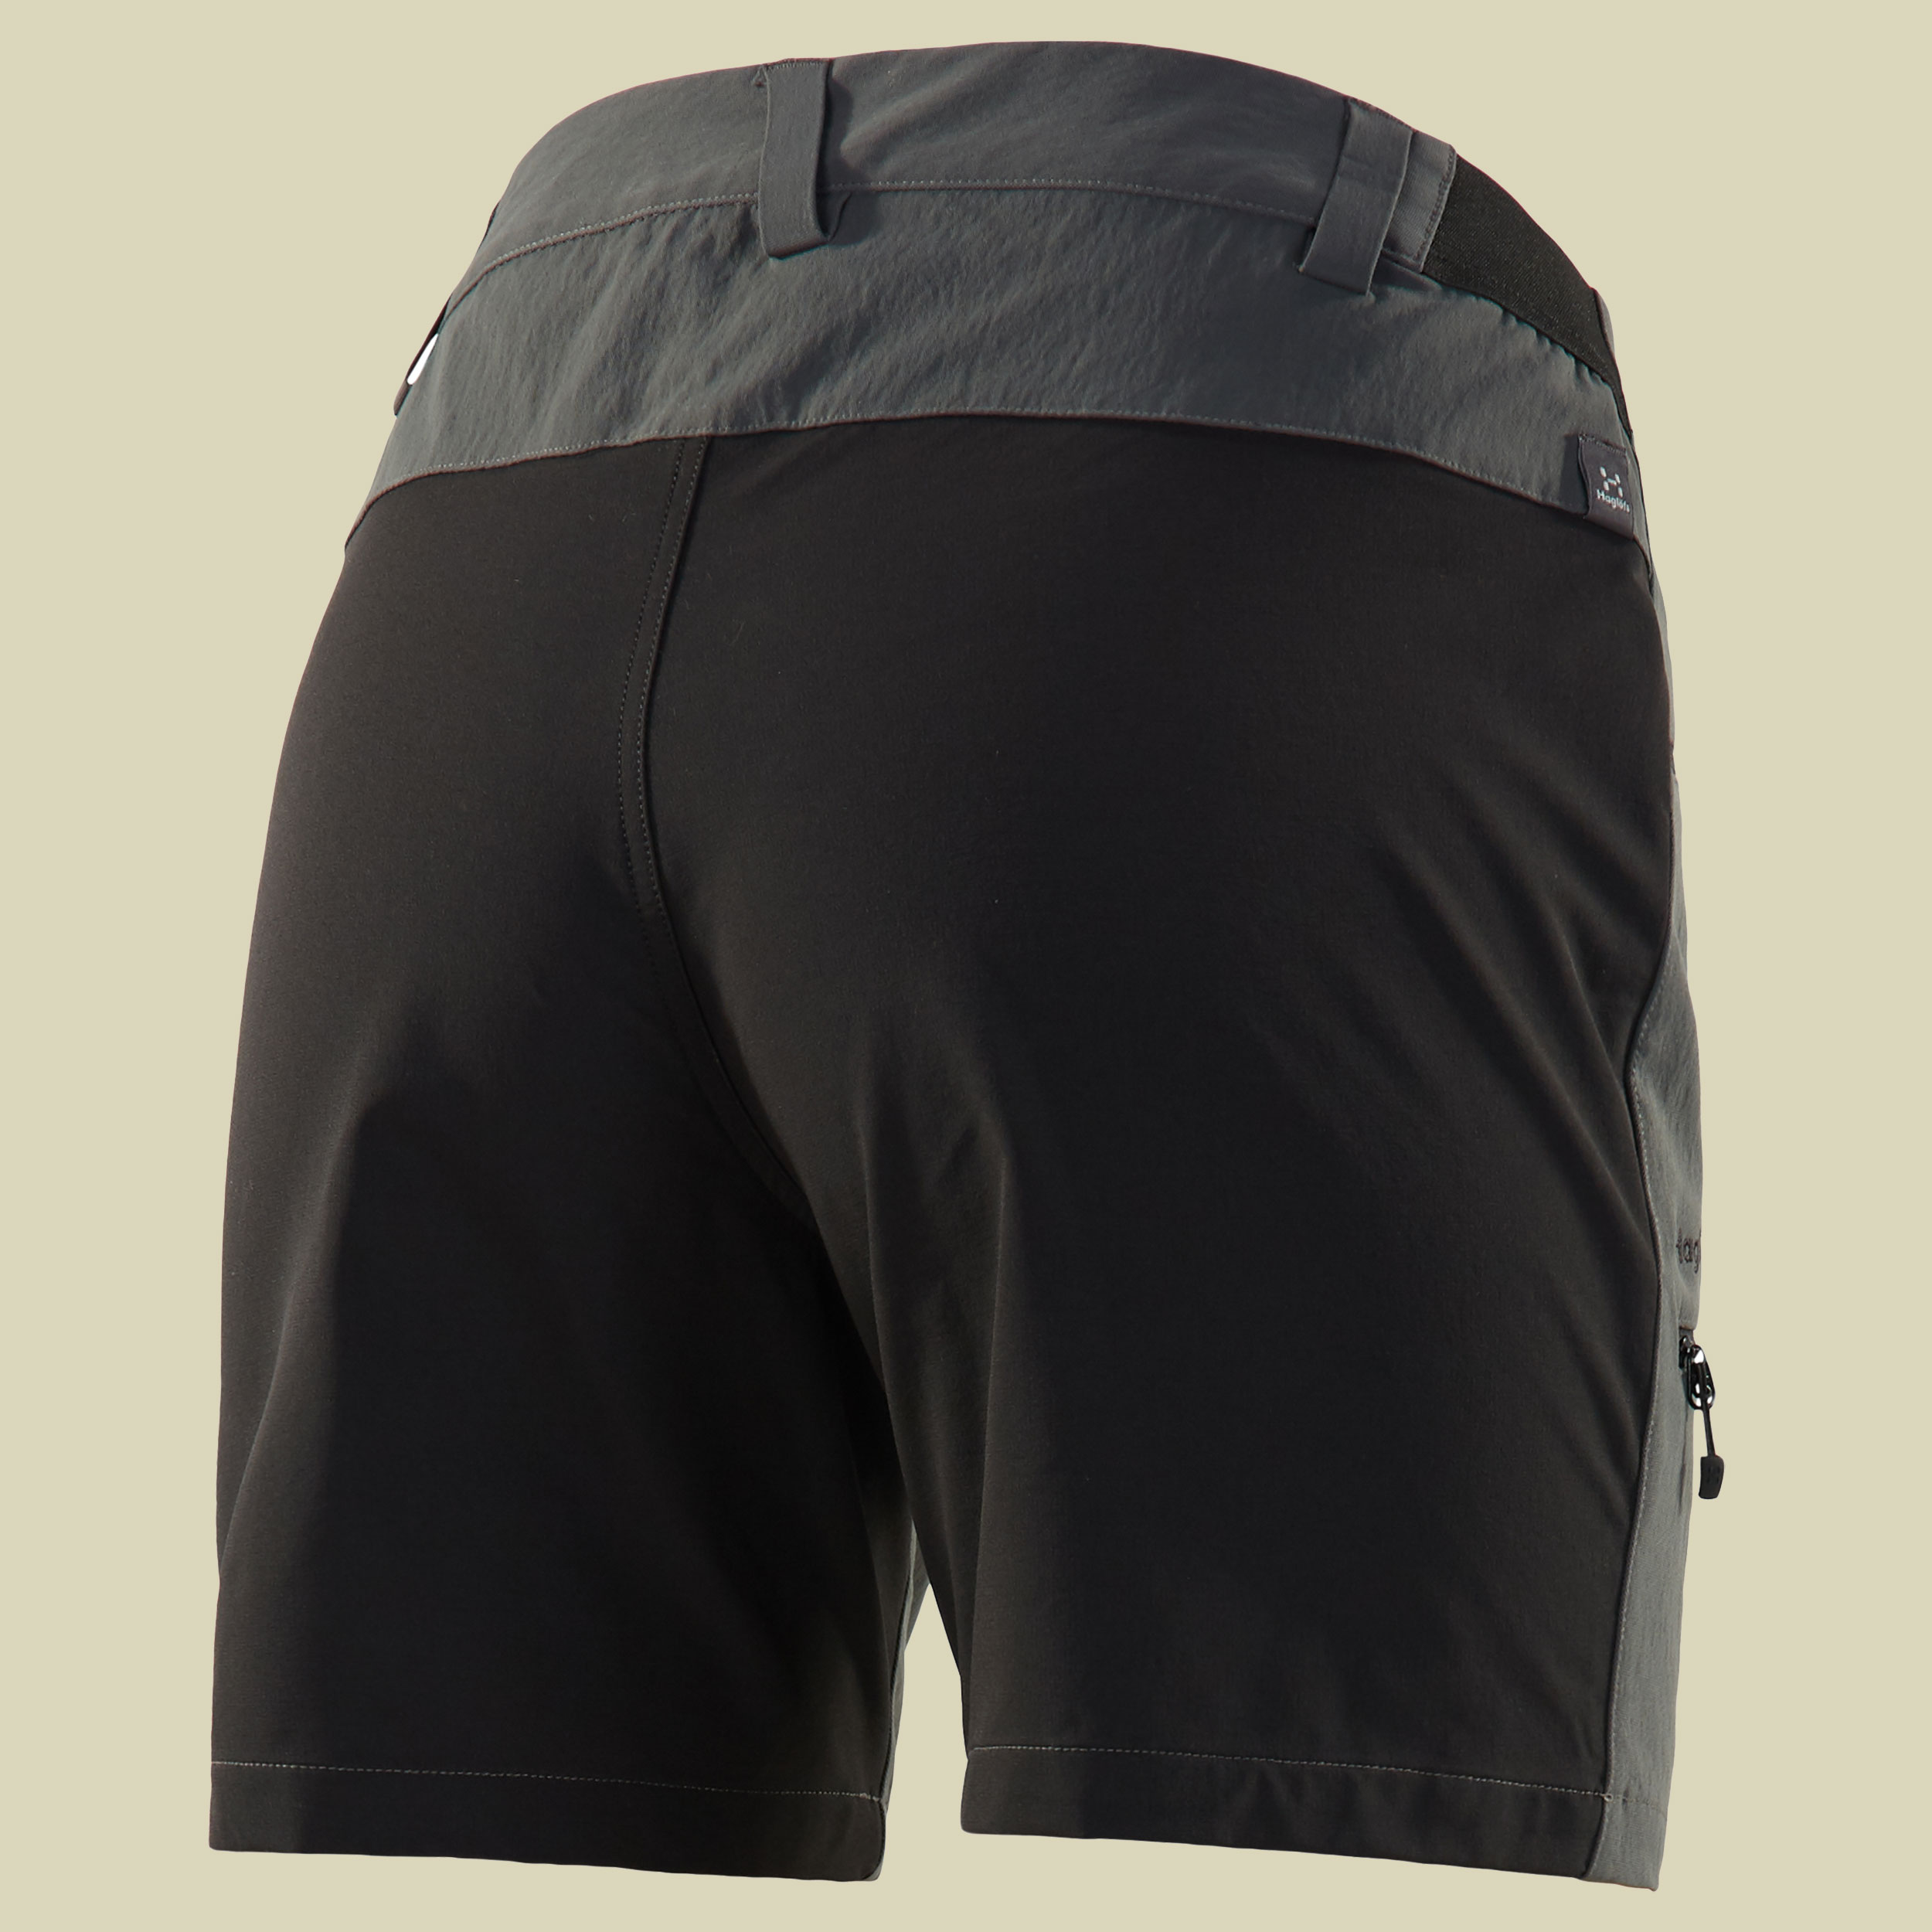 Rugged Flex Shorts Women Größe 38 Farbe magnetite/true black